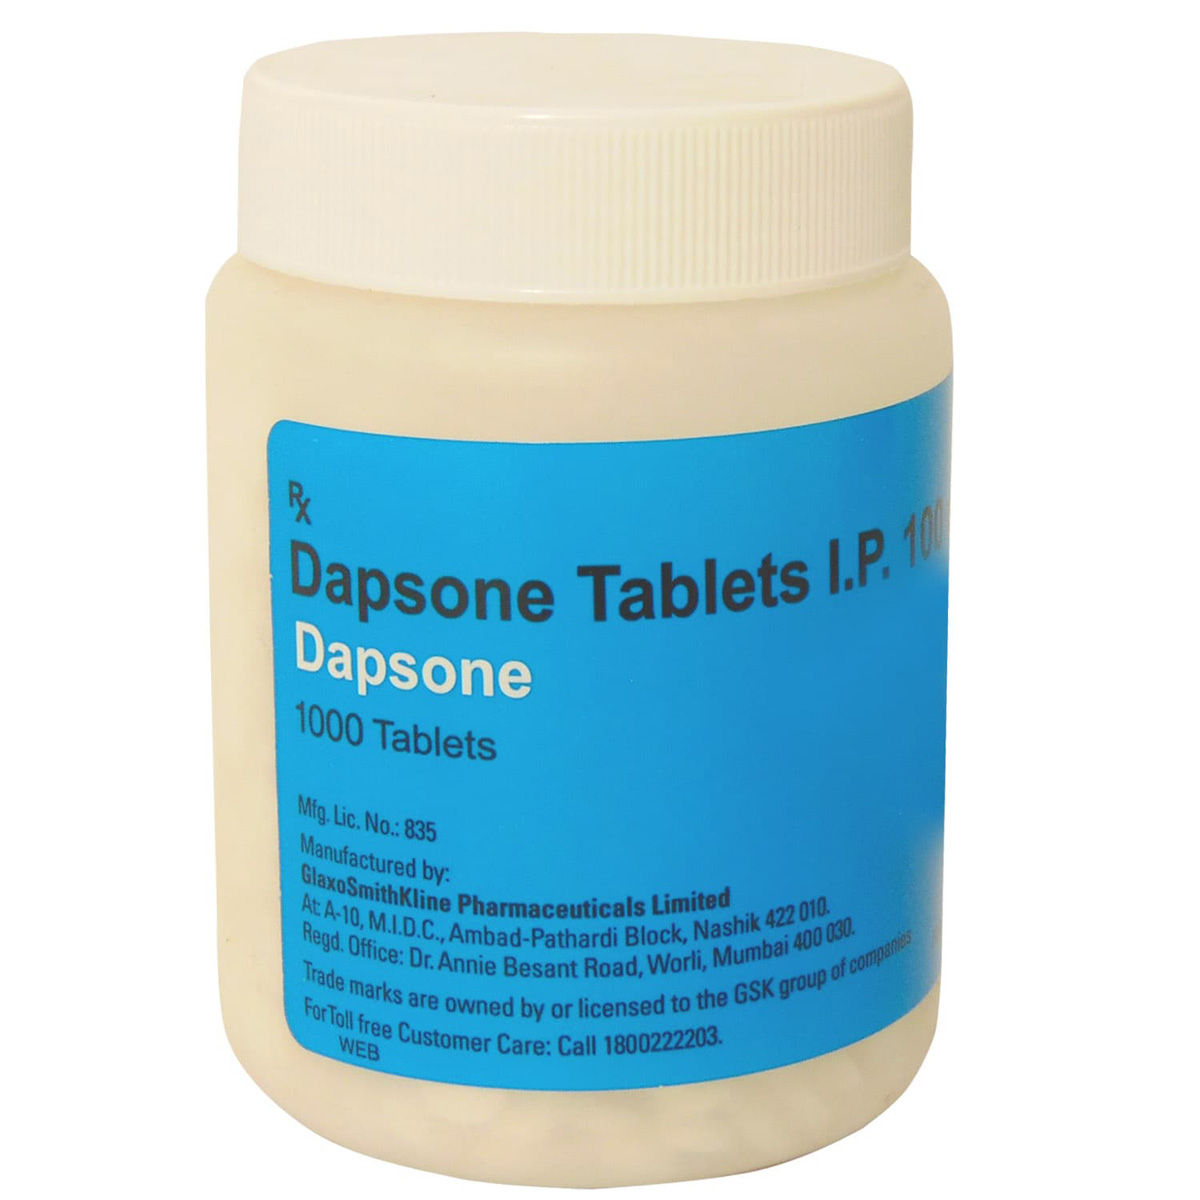 Buy Dapsone Tablet 1000's Online